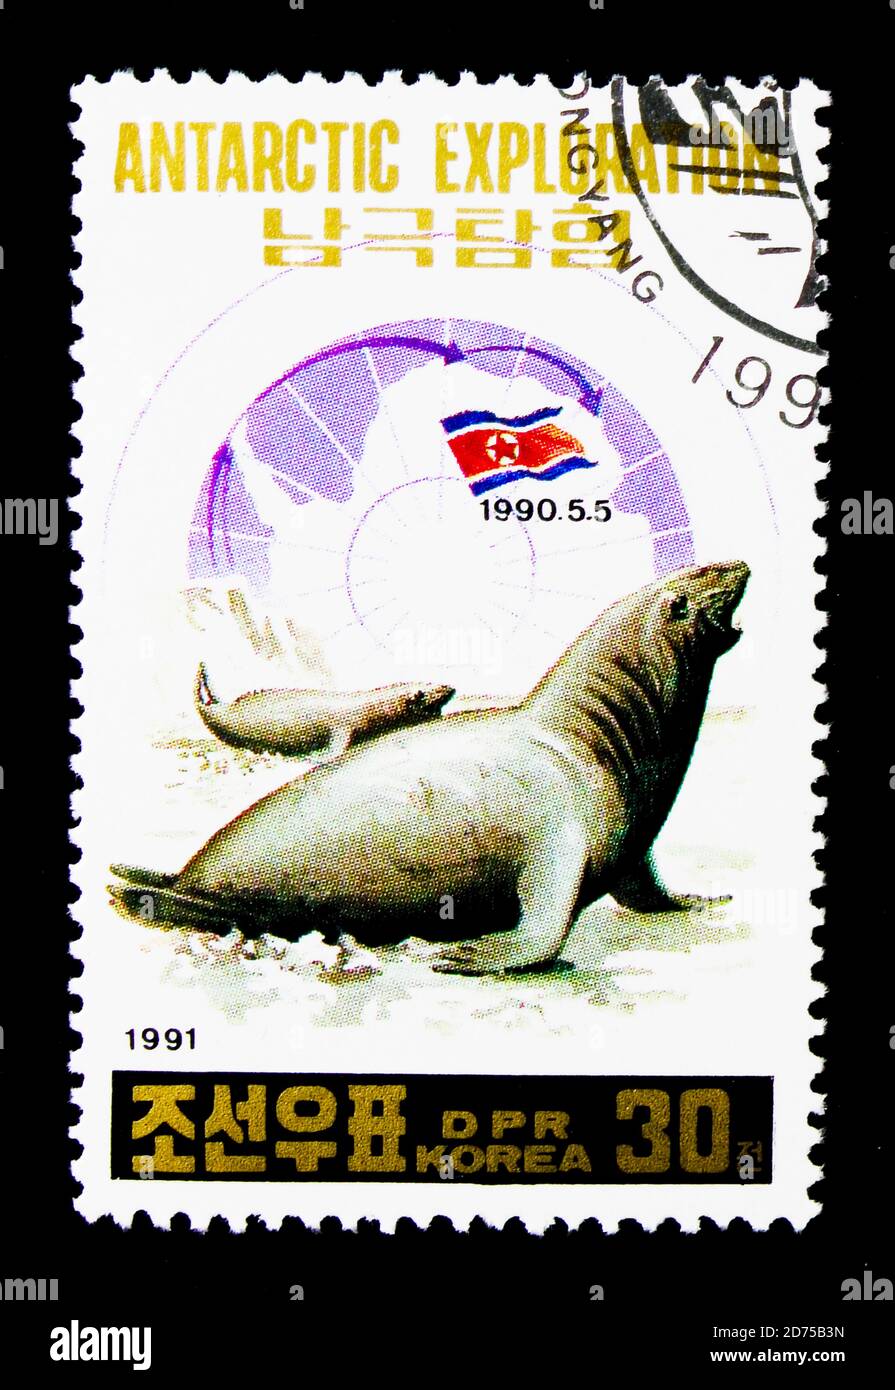 MOSCOU, RUSSIE - 25 NOVEMBRE 2017 : un timbre imprimé en république populaire démocratique de Corée montre le phoque de l'éléphant du Sud (Mirounga leonina), Antartique Banque D'Images